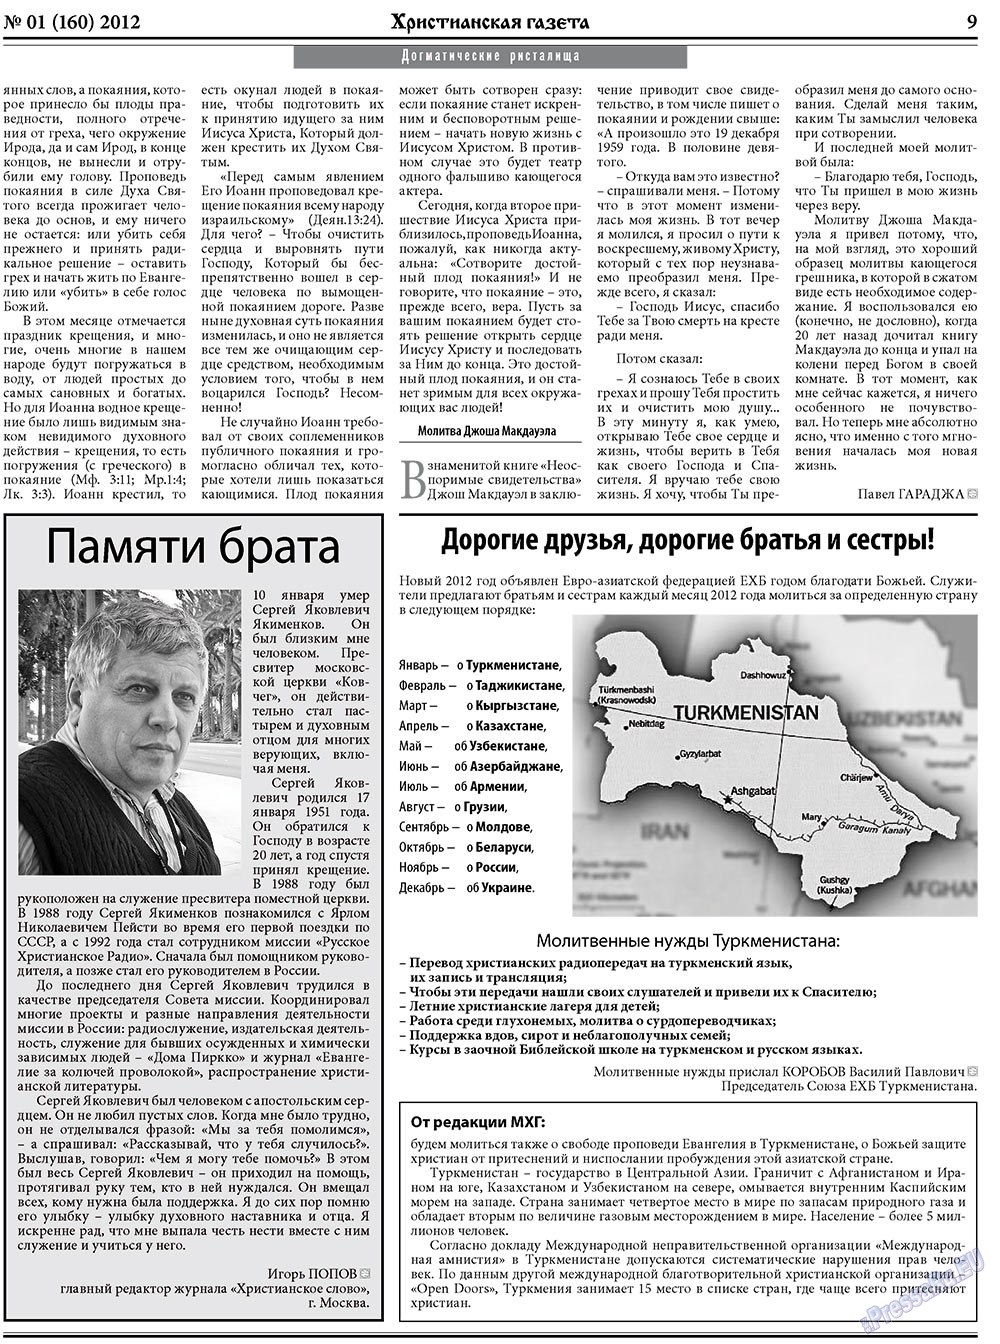 Христианская газета, газета. 2012 №1 стр.9